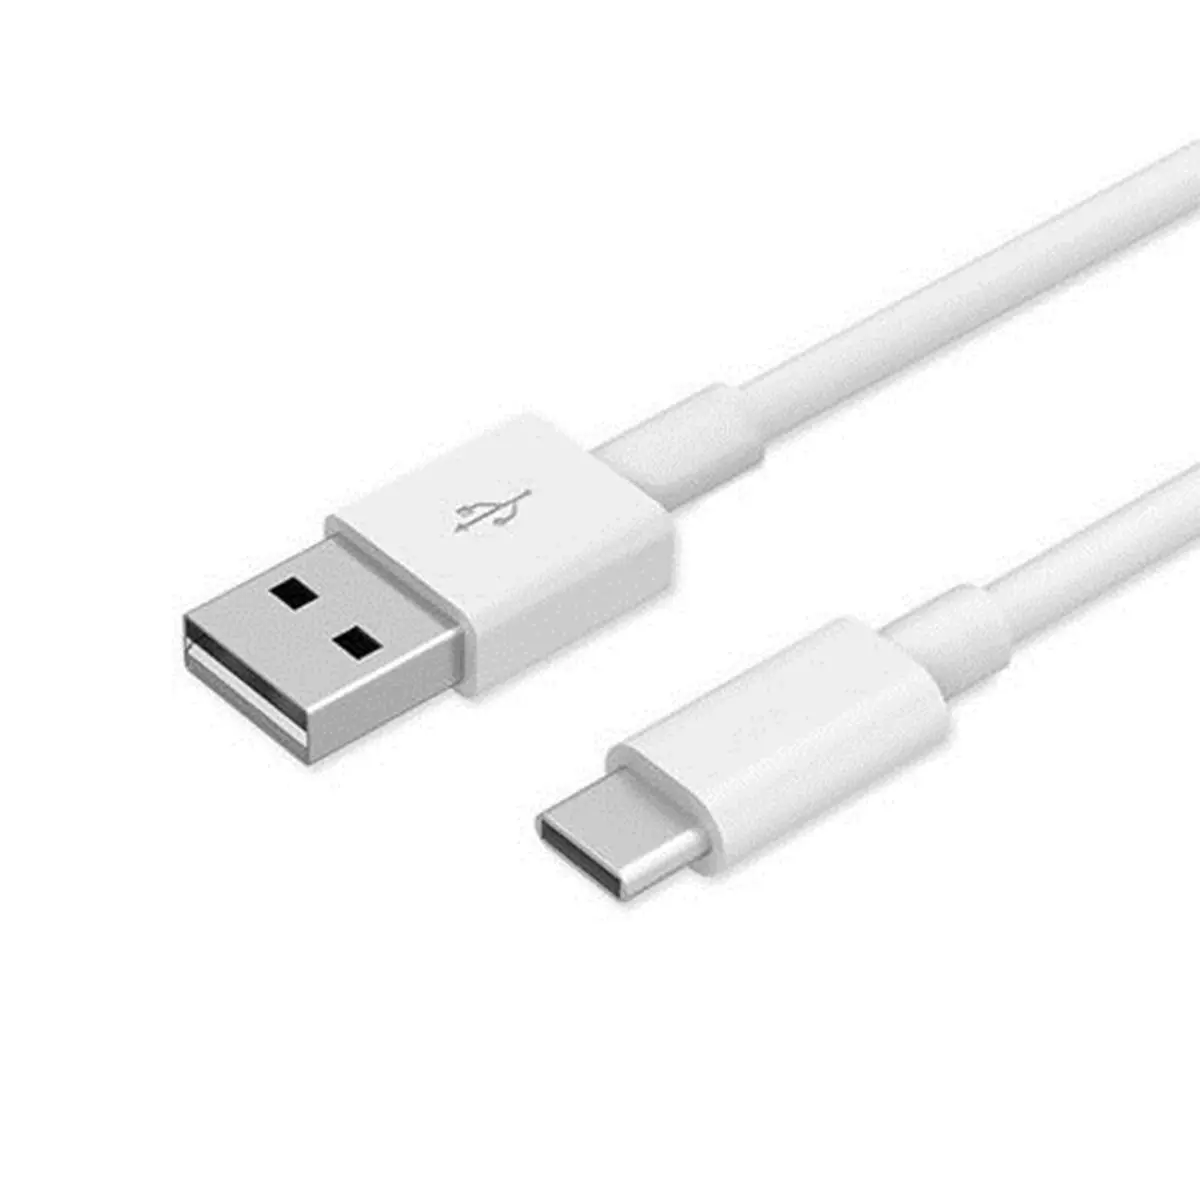 1M לבן/שחור סוג C כבל USB 2.0 3.0 סוג-C מהיר טעינה ונתונים סנכרון USB C כבל עבור טלפון נייד